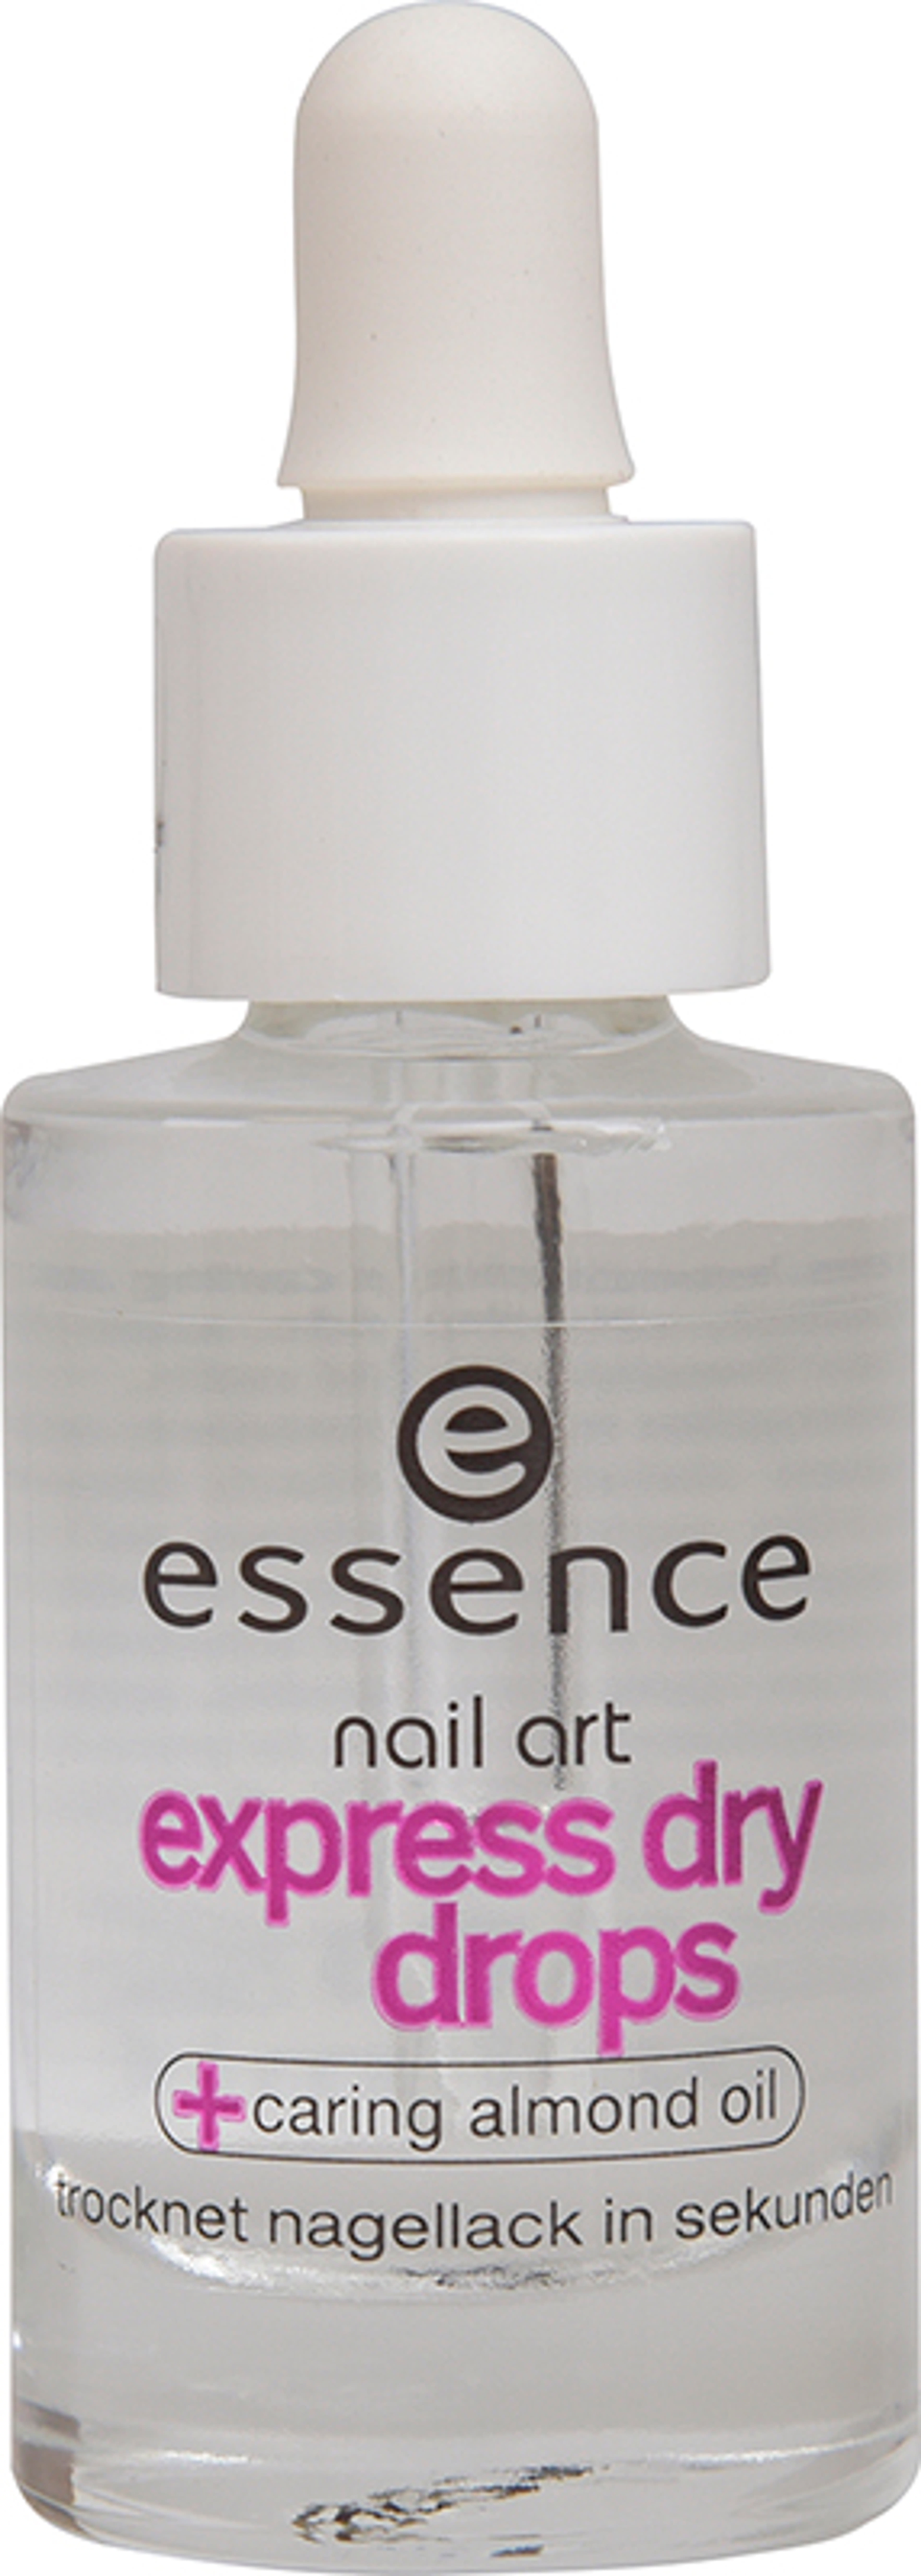 Essence Express Dry Drops körömlakk szárító - 8 ml